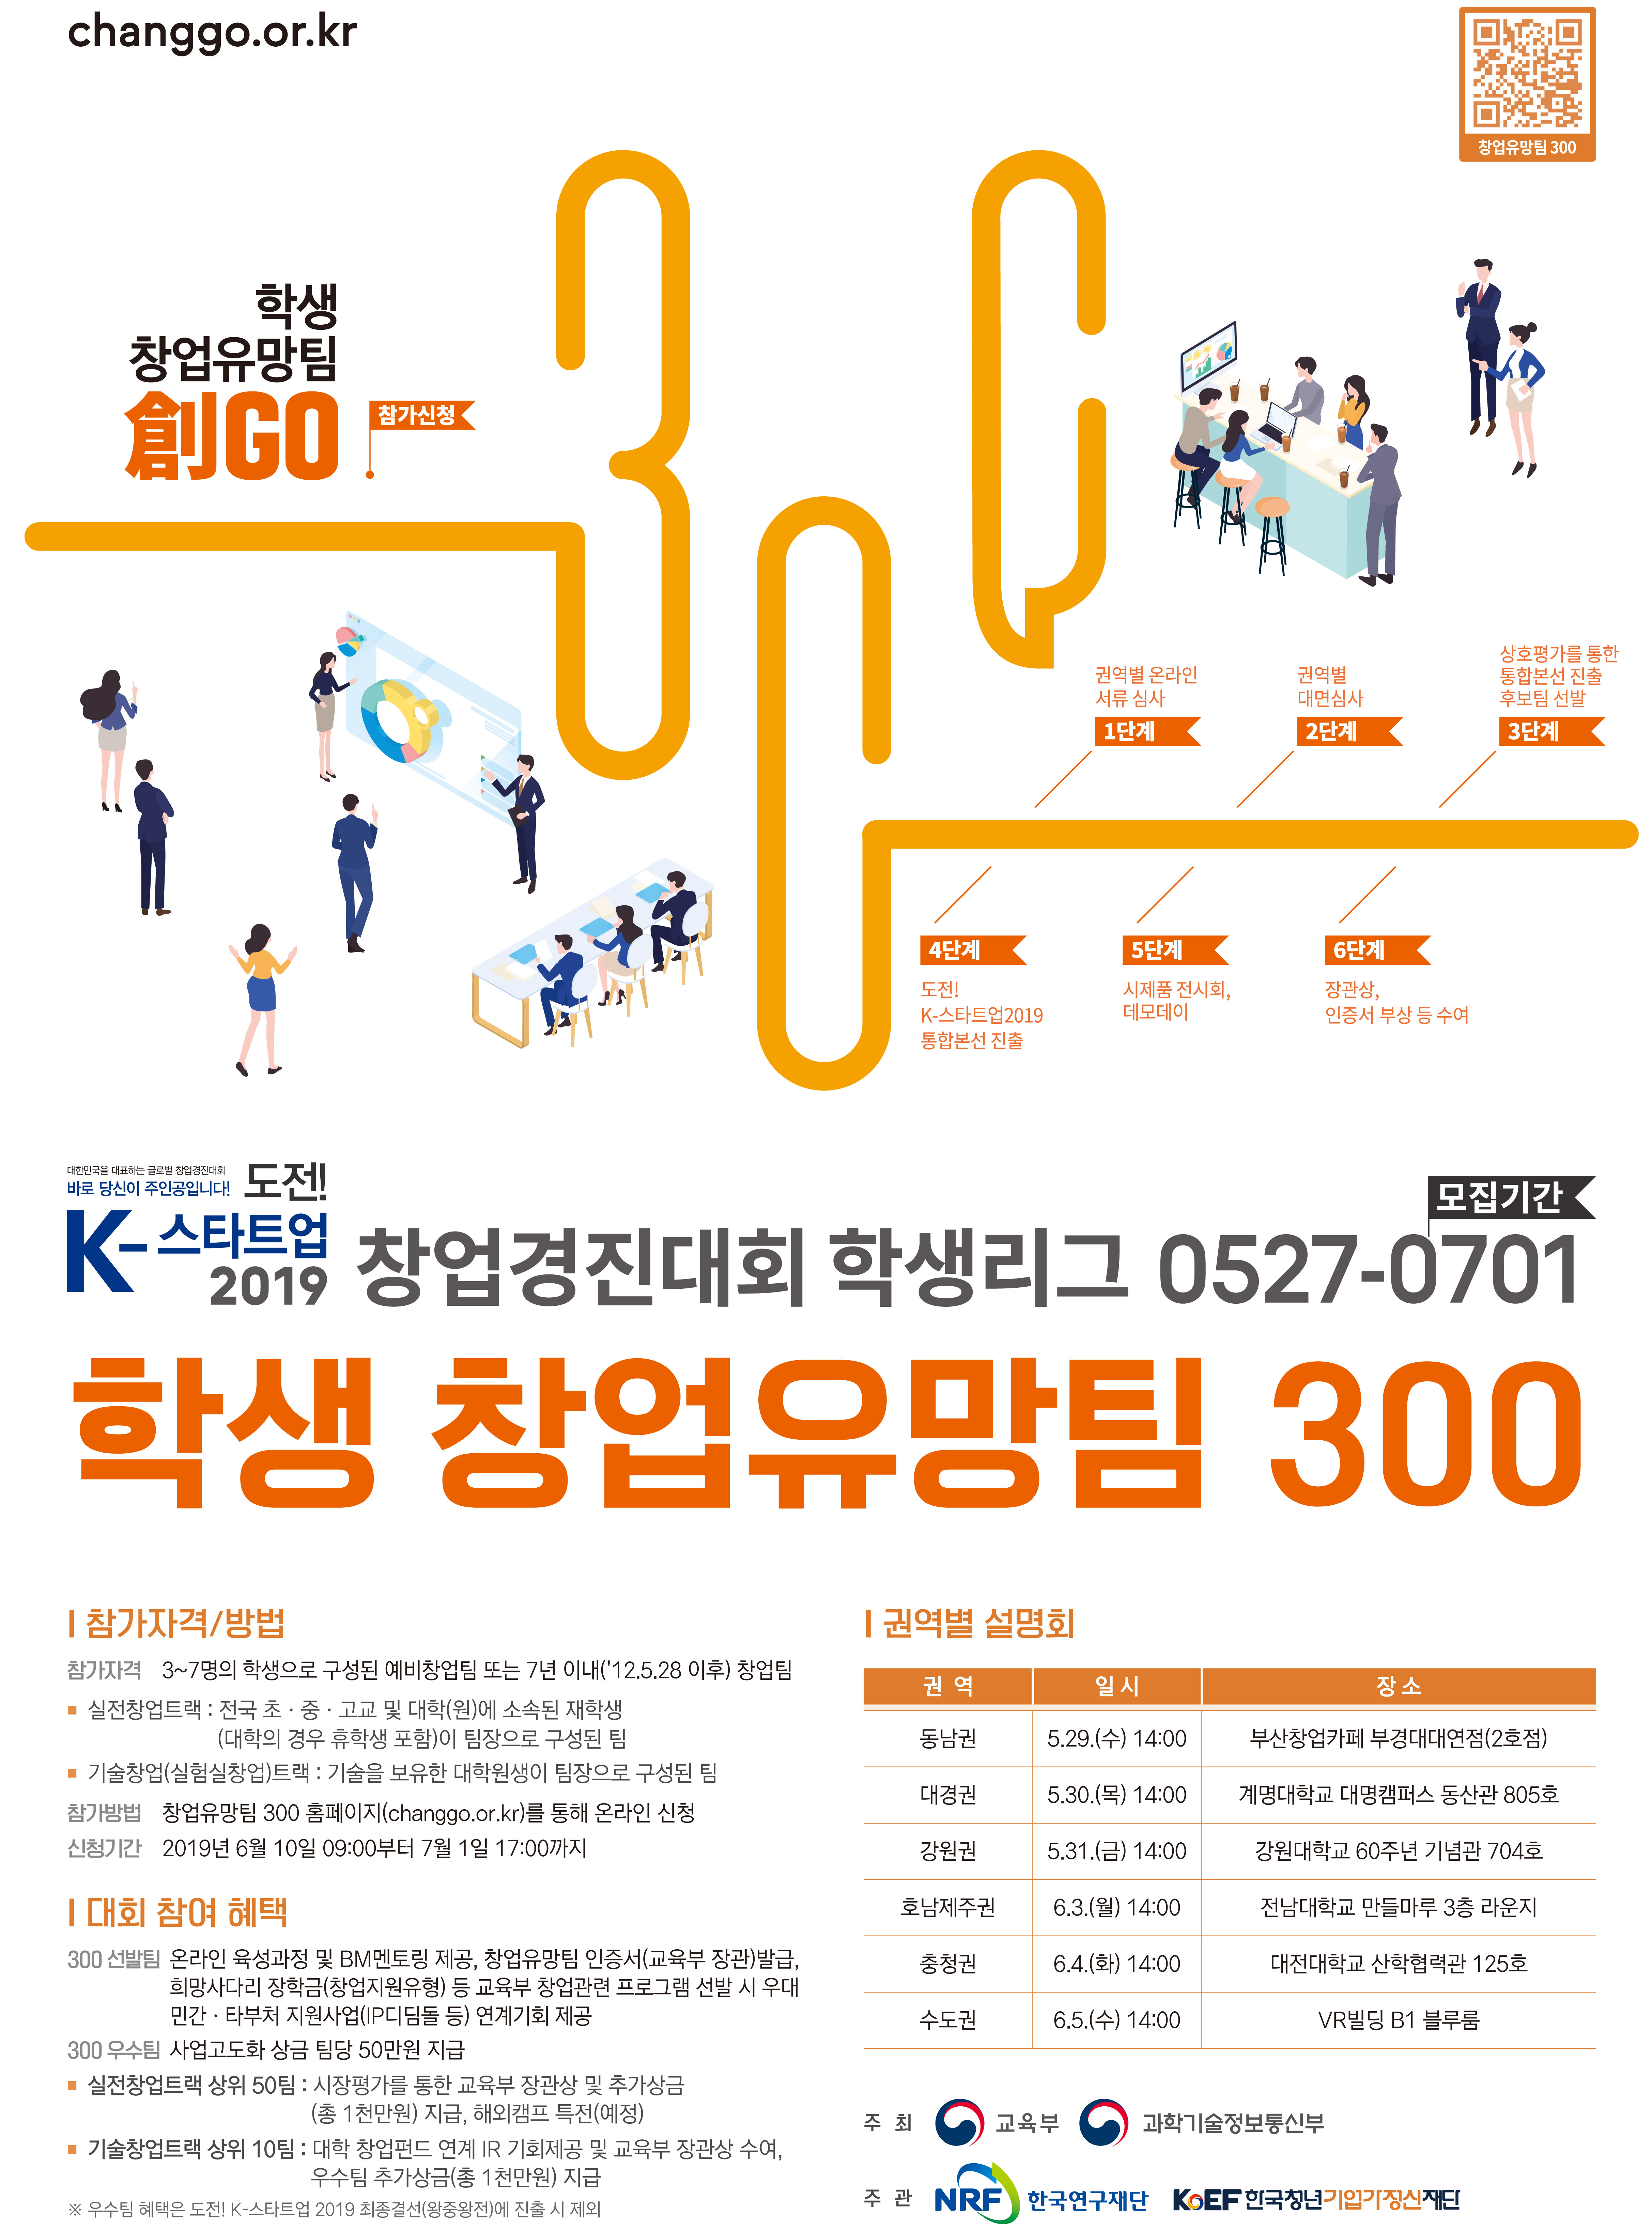 「2019 학생 창업유망팀 300 경진대회」 개최 안내